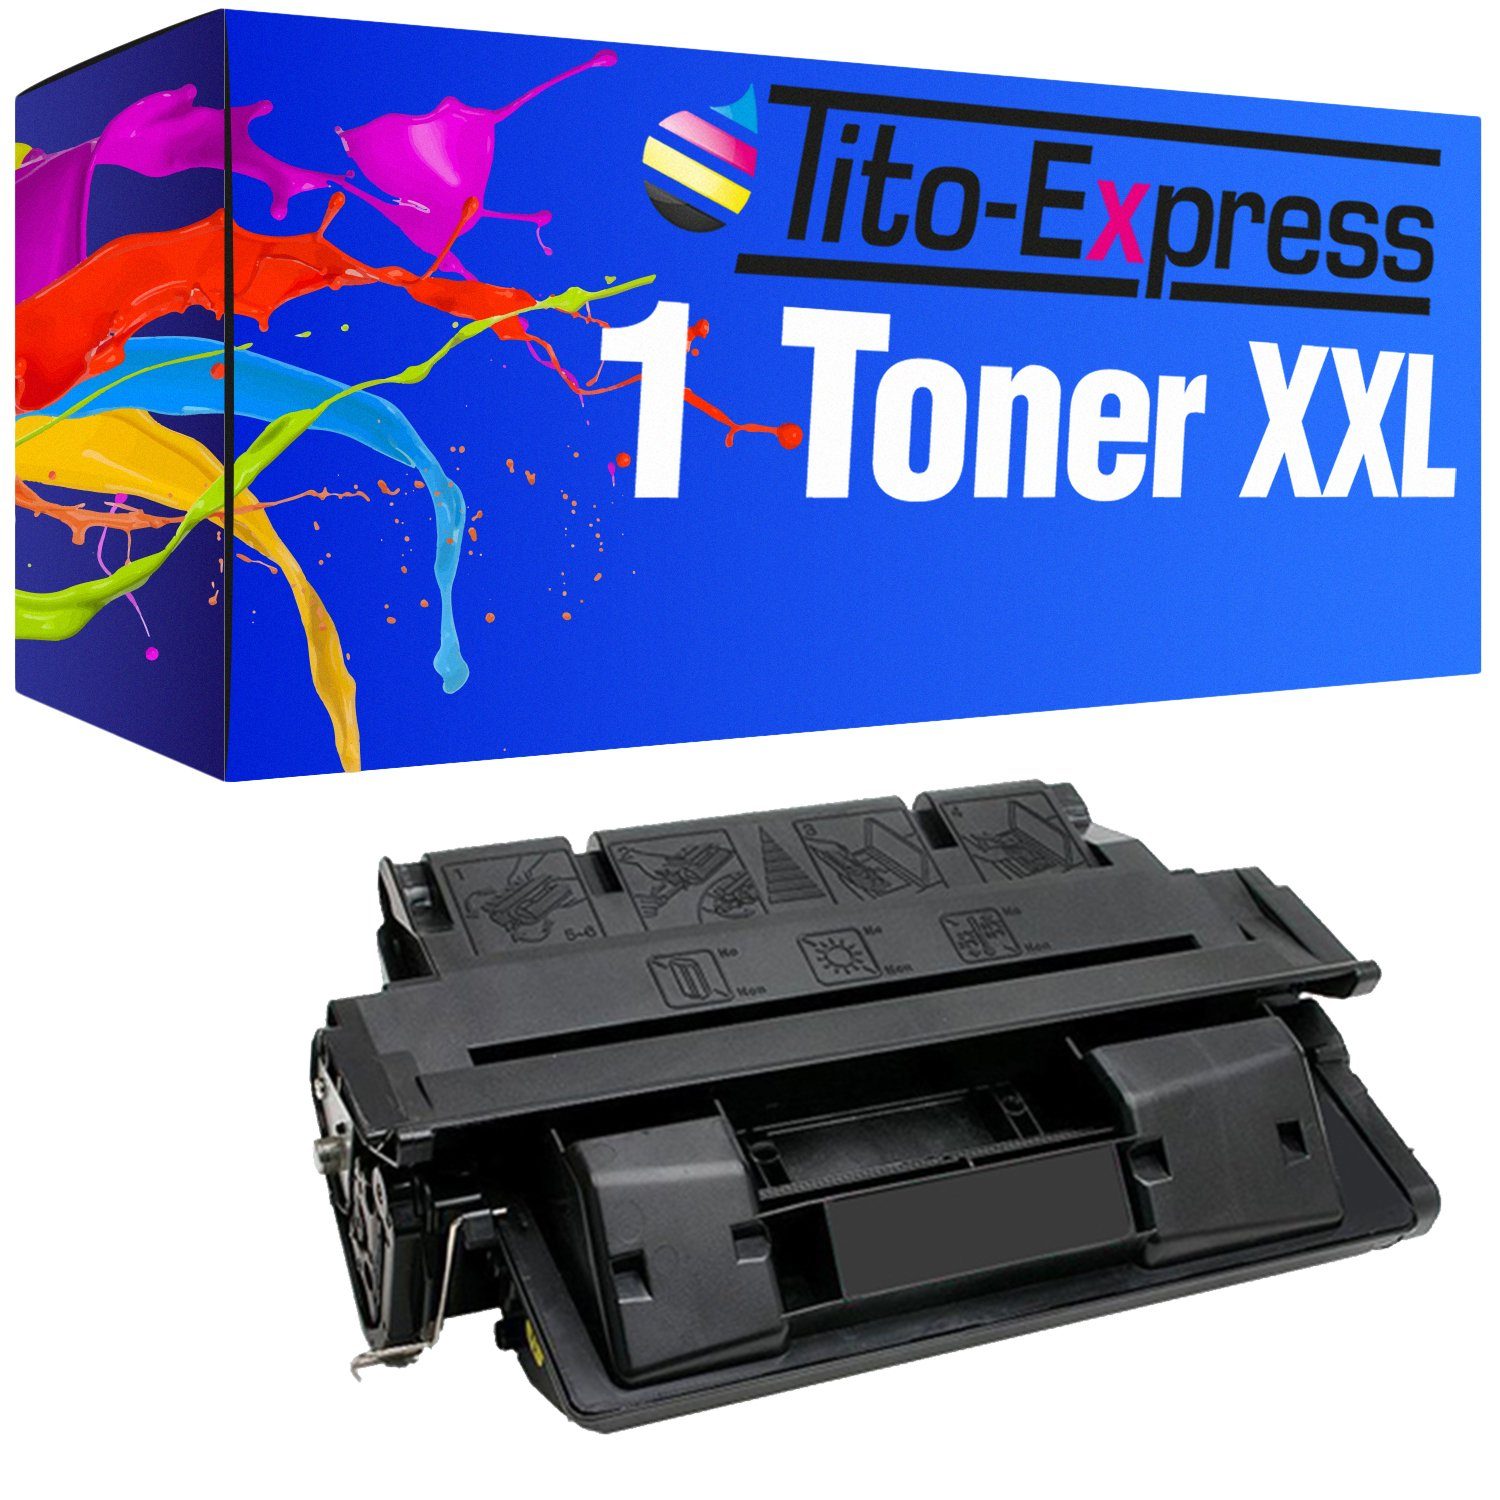 Tonerpatrone Series Tito-Express i-SENSYS i-SENSYS EP-62 i-SENSYS Canon Black, für LBP-1760 ersetzt EP LBP-1760e CanonEP62 62 LBP-1700 Canon